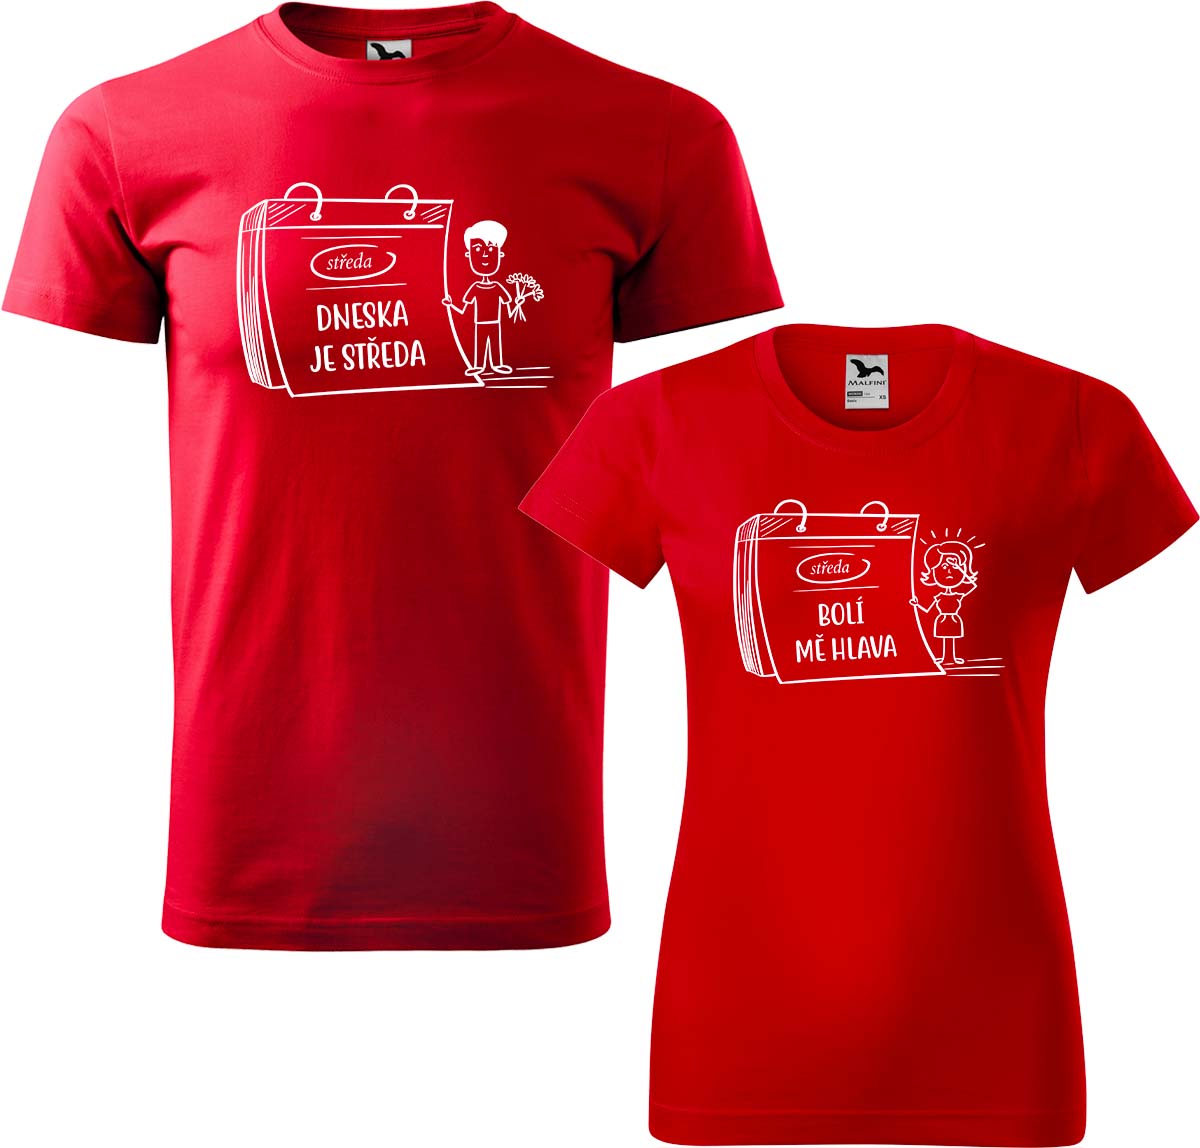 Trička pro páry - Dneska je středa Barva: Červená (07), Velikost dámské tričko: M, Velikost pánské tričko: M